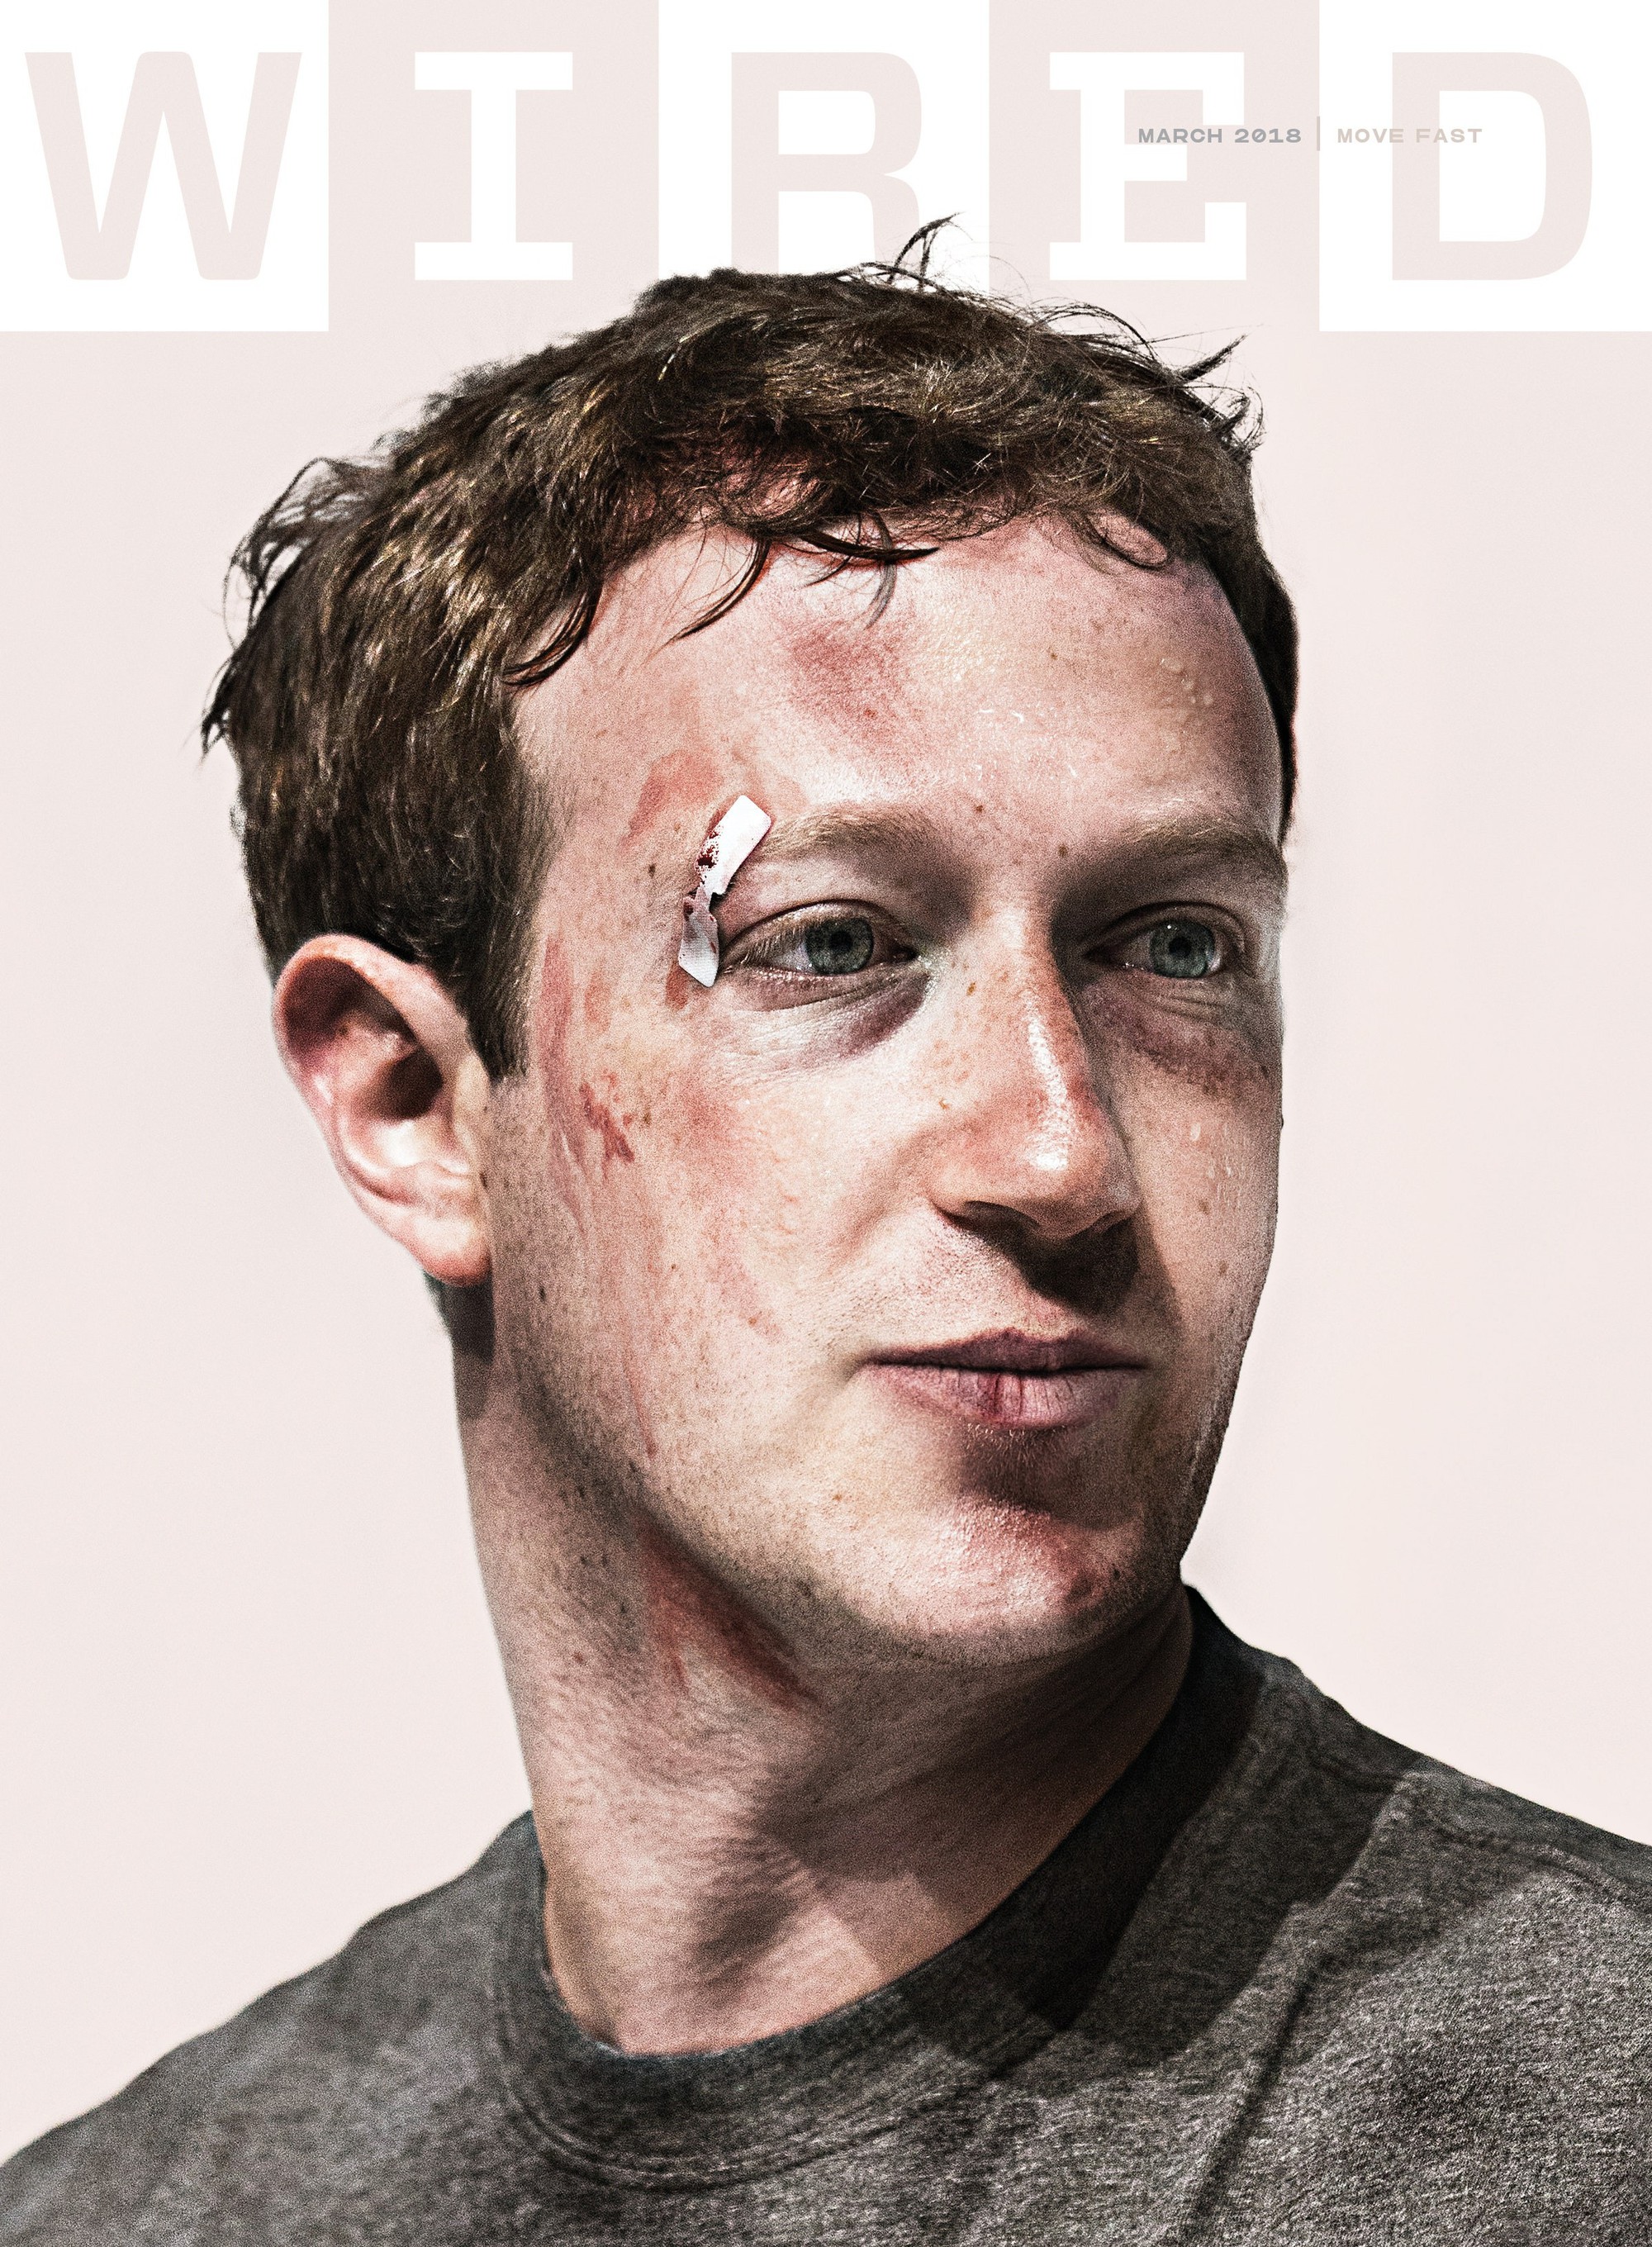 Bão sa thải lần 2 trong giới công nghệ bắt đầu: Học theo bẫy ăn xổi 1.000 tỷ USD của Mark Zuckerberg, các công ty không tập trung sáng tạo mà chỉ lo đuổi việc, hàng chục nghìn lao động sẽ sớm mất việc- Ảnh 5.